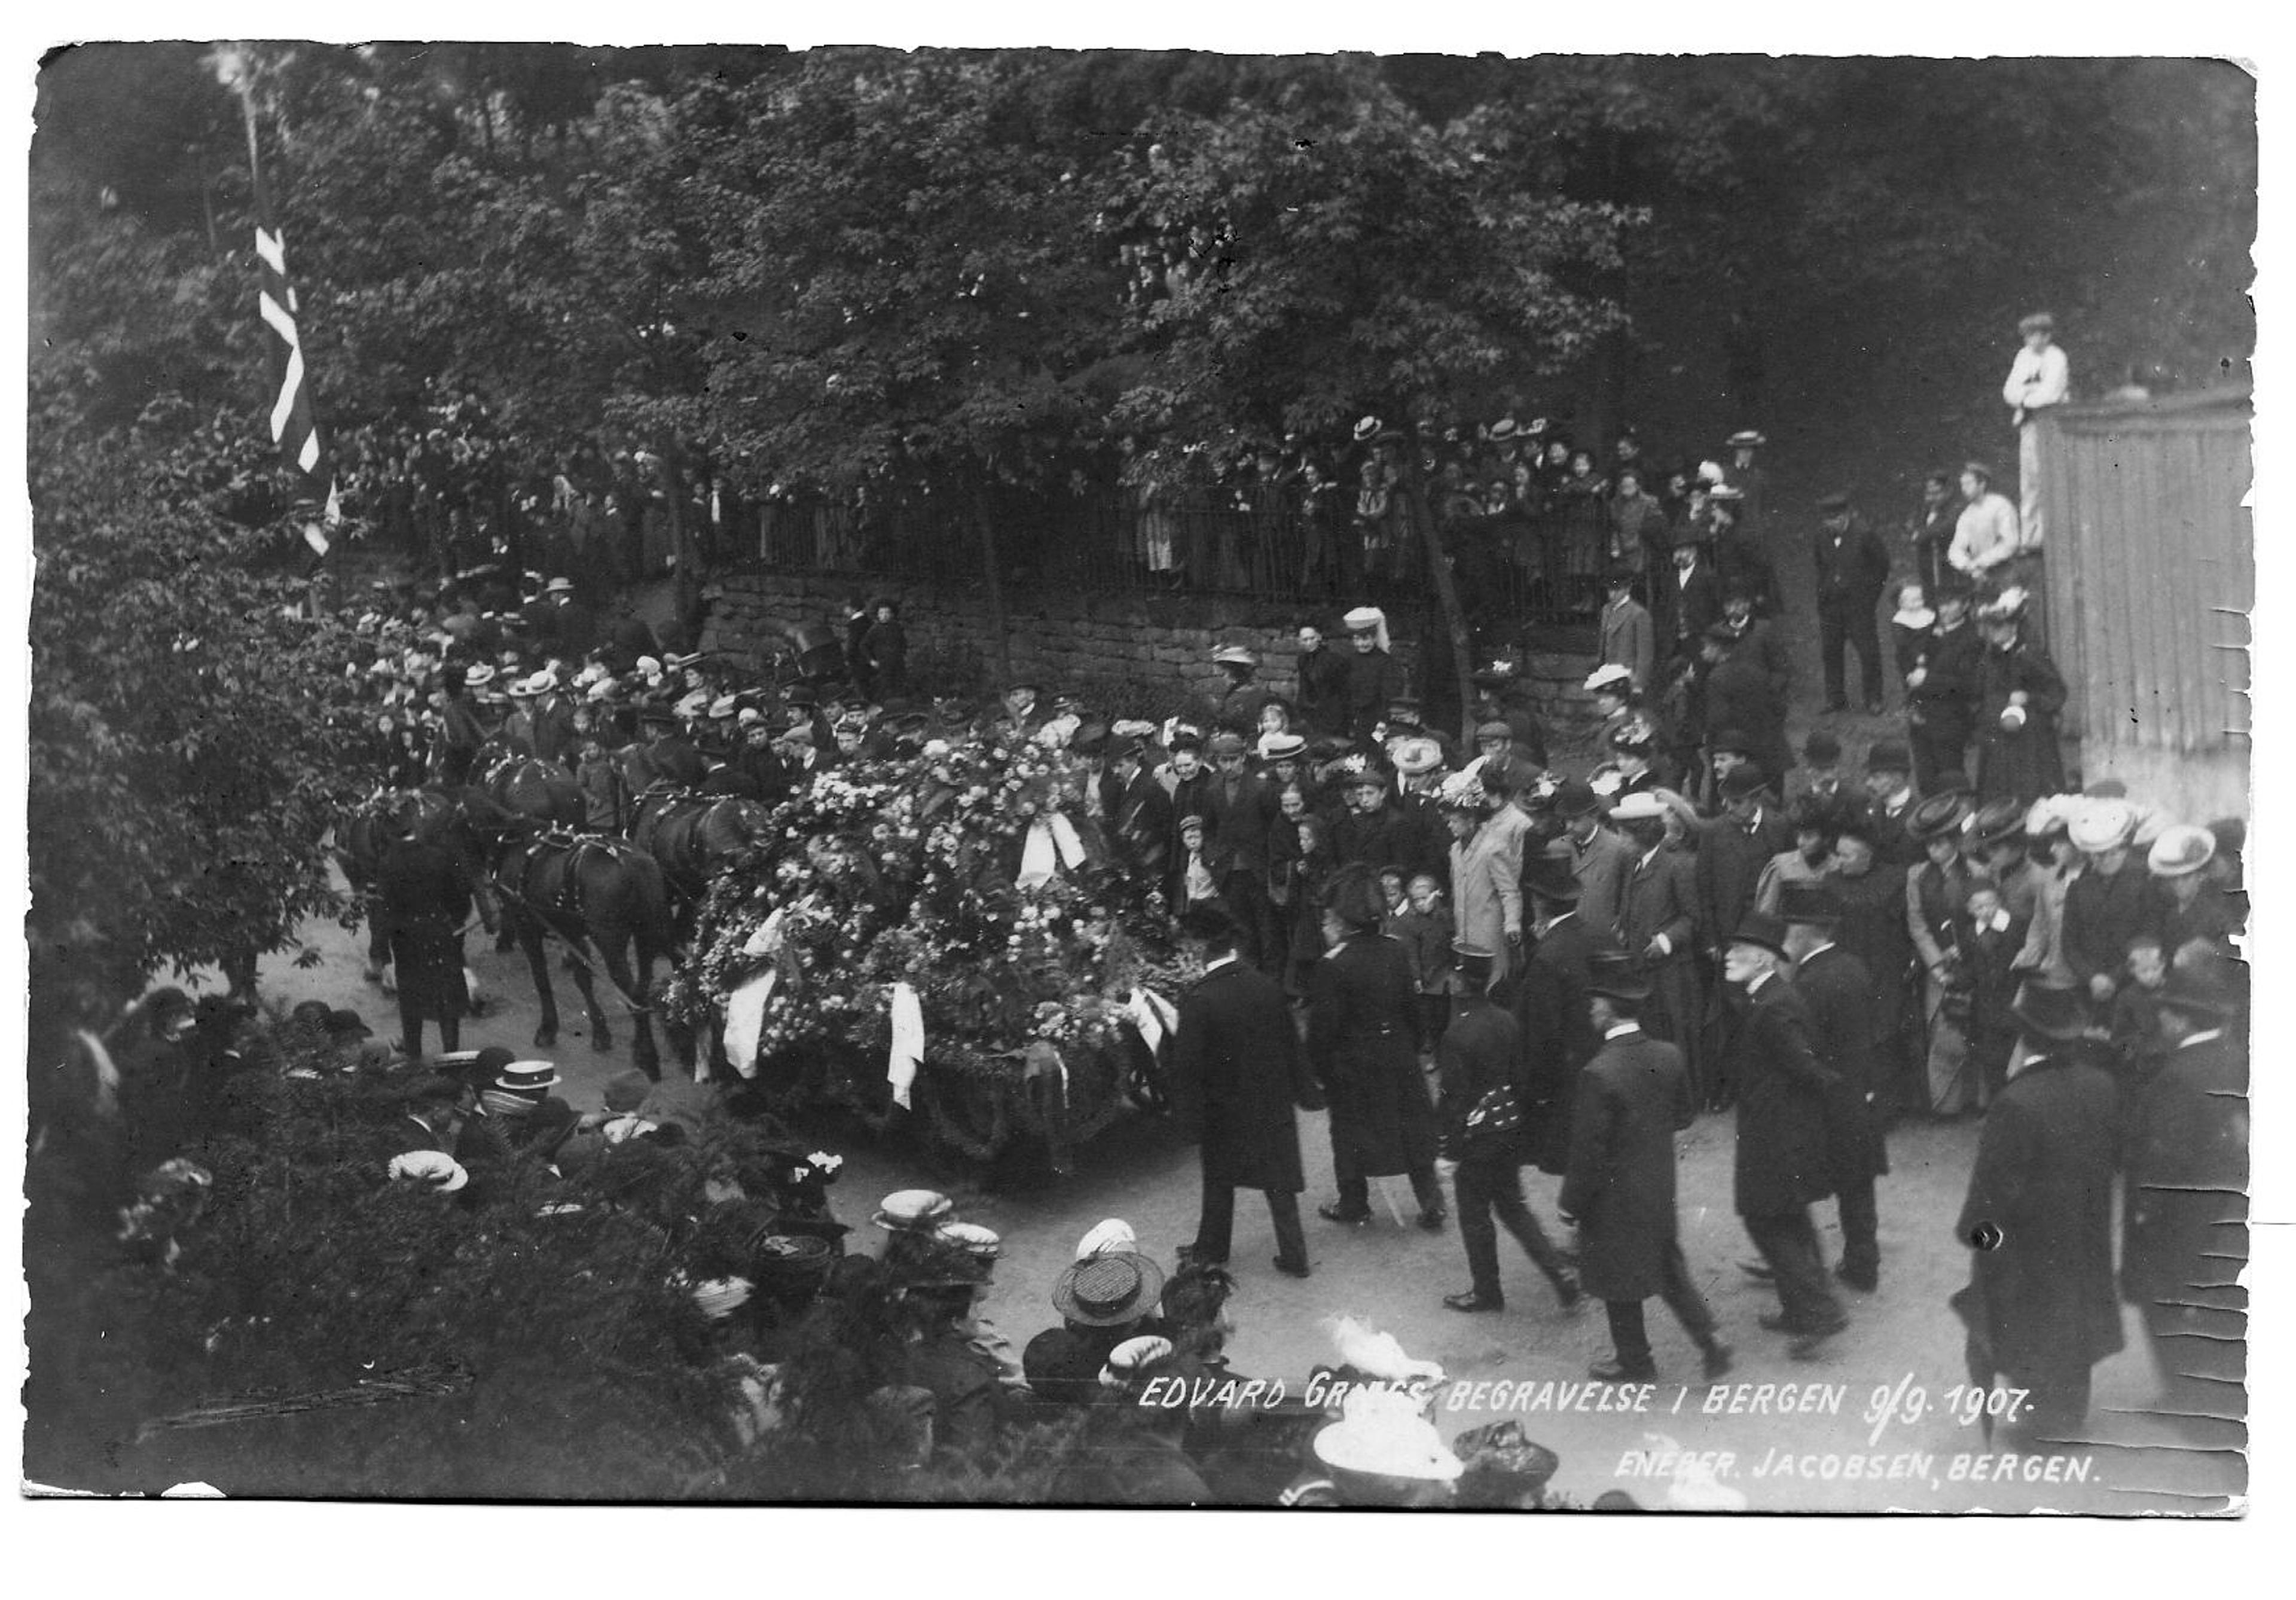 Fra Edvard Griegs begravelsesprosesjon gjennom Bergens gater, bilde av kisten på hestevogn og en stor folkemengde.